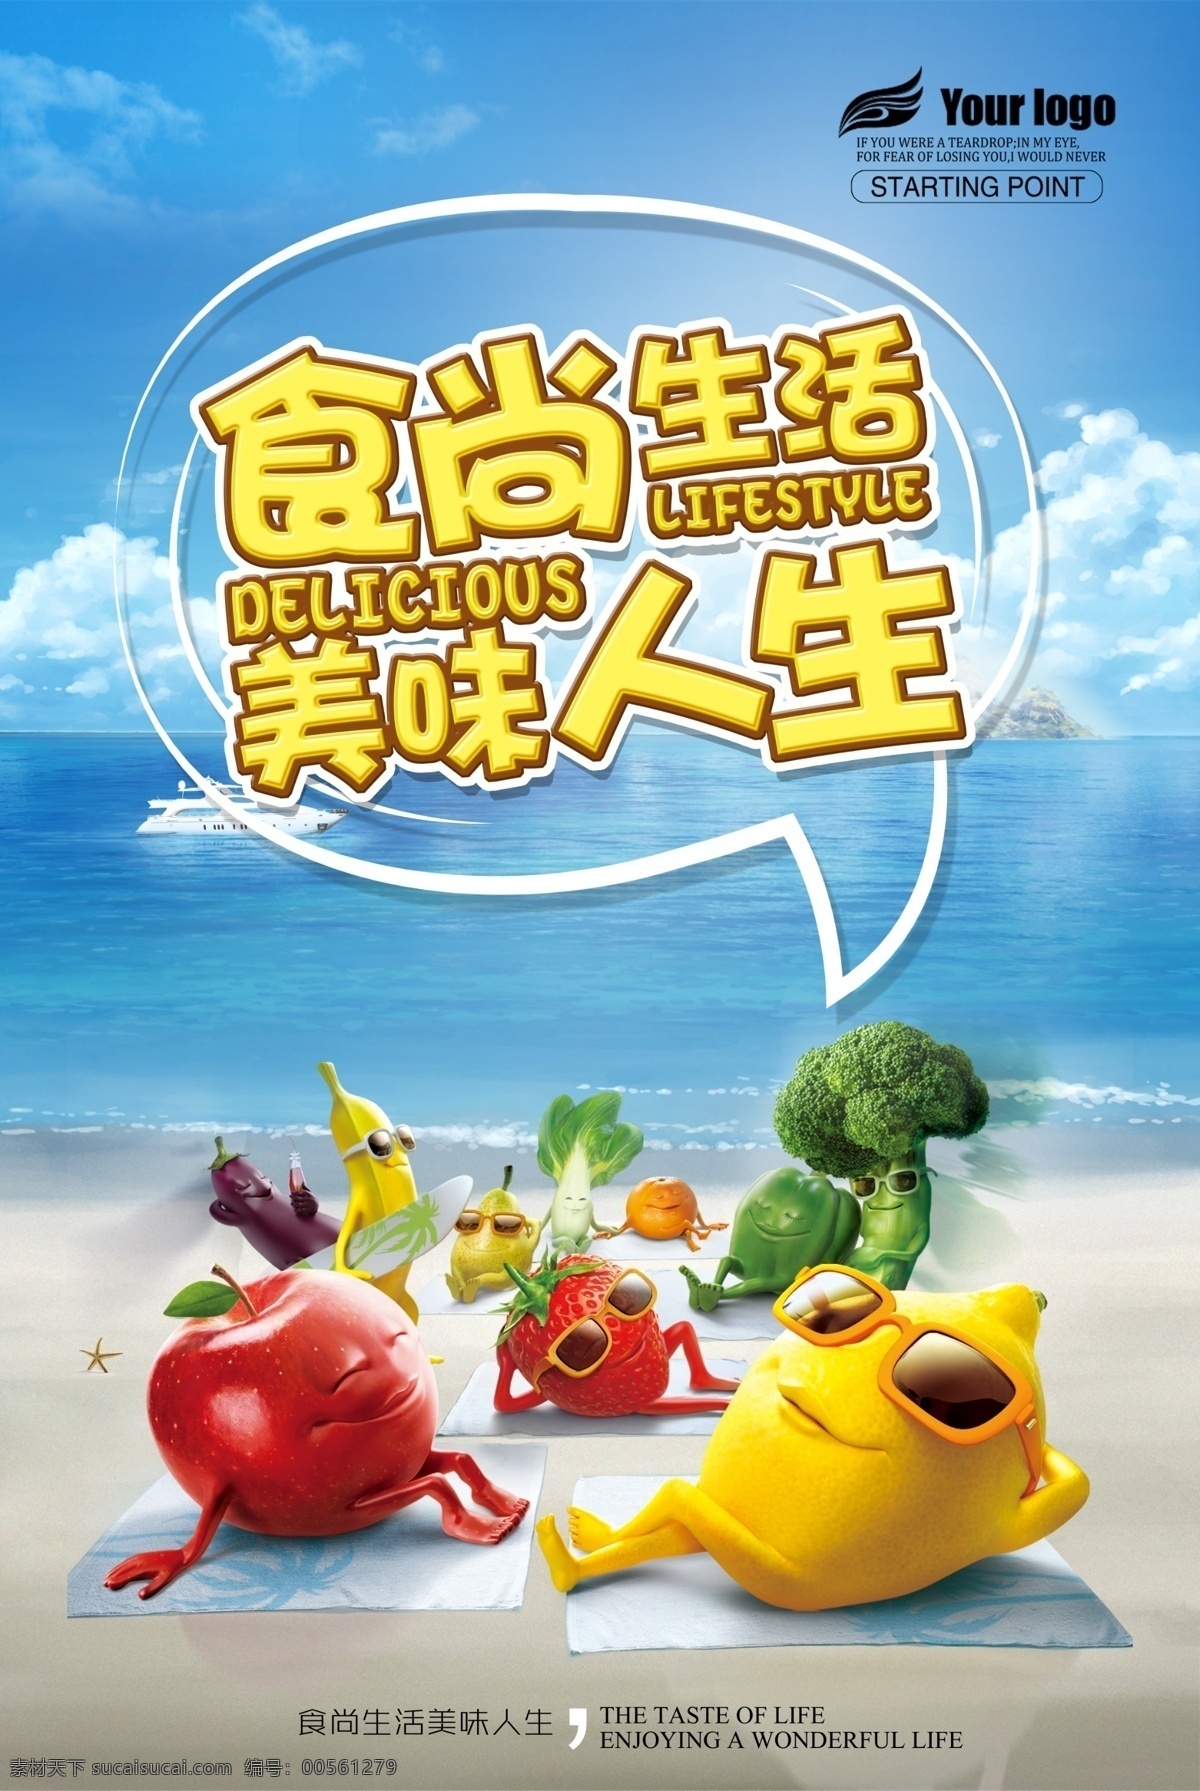 食 尚 生活 美食 海报 可爱 美味 墨镜 水果 拟人 卡通 沙滩 海滩 大海 白云 海边 蔬菜 蔬果 晒太阳的水果 柠檬 苹果 西兰花